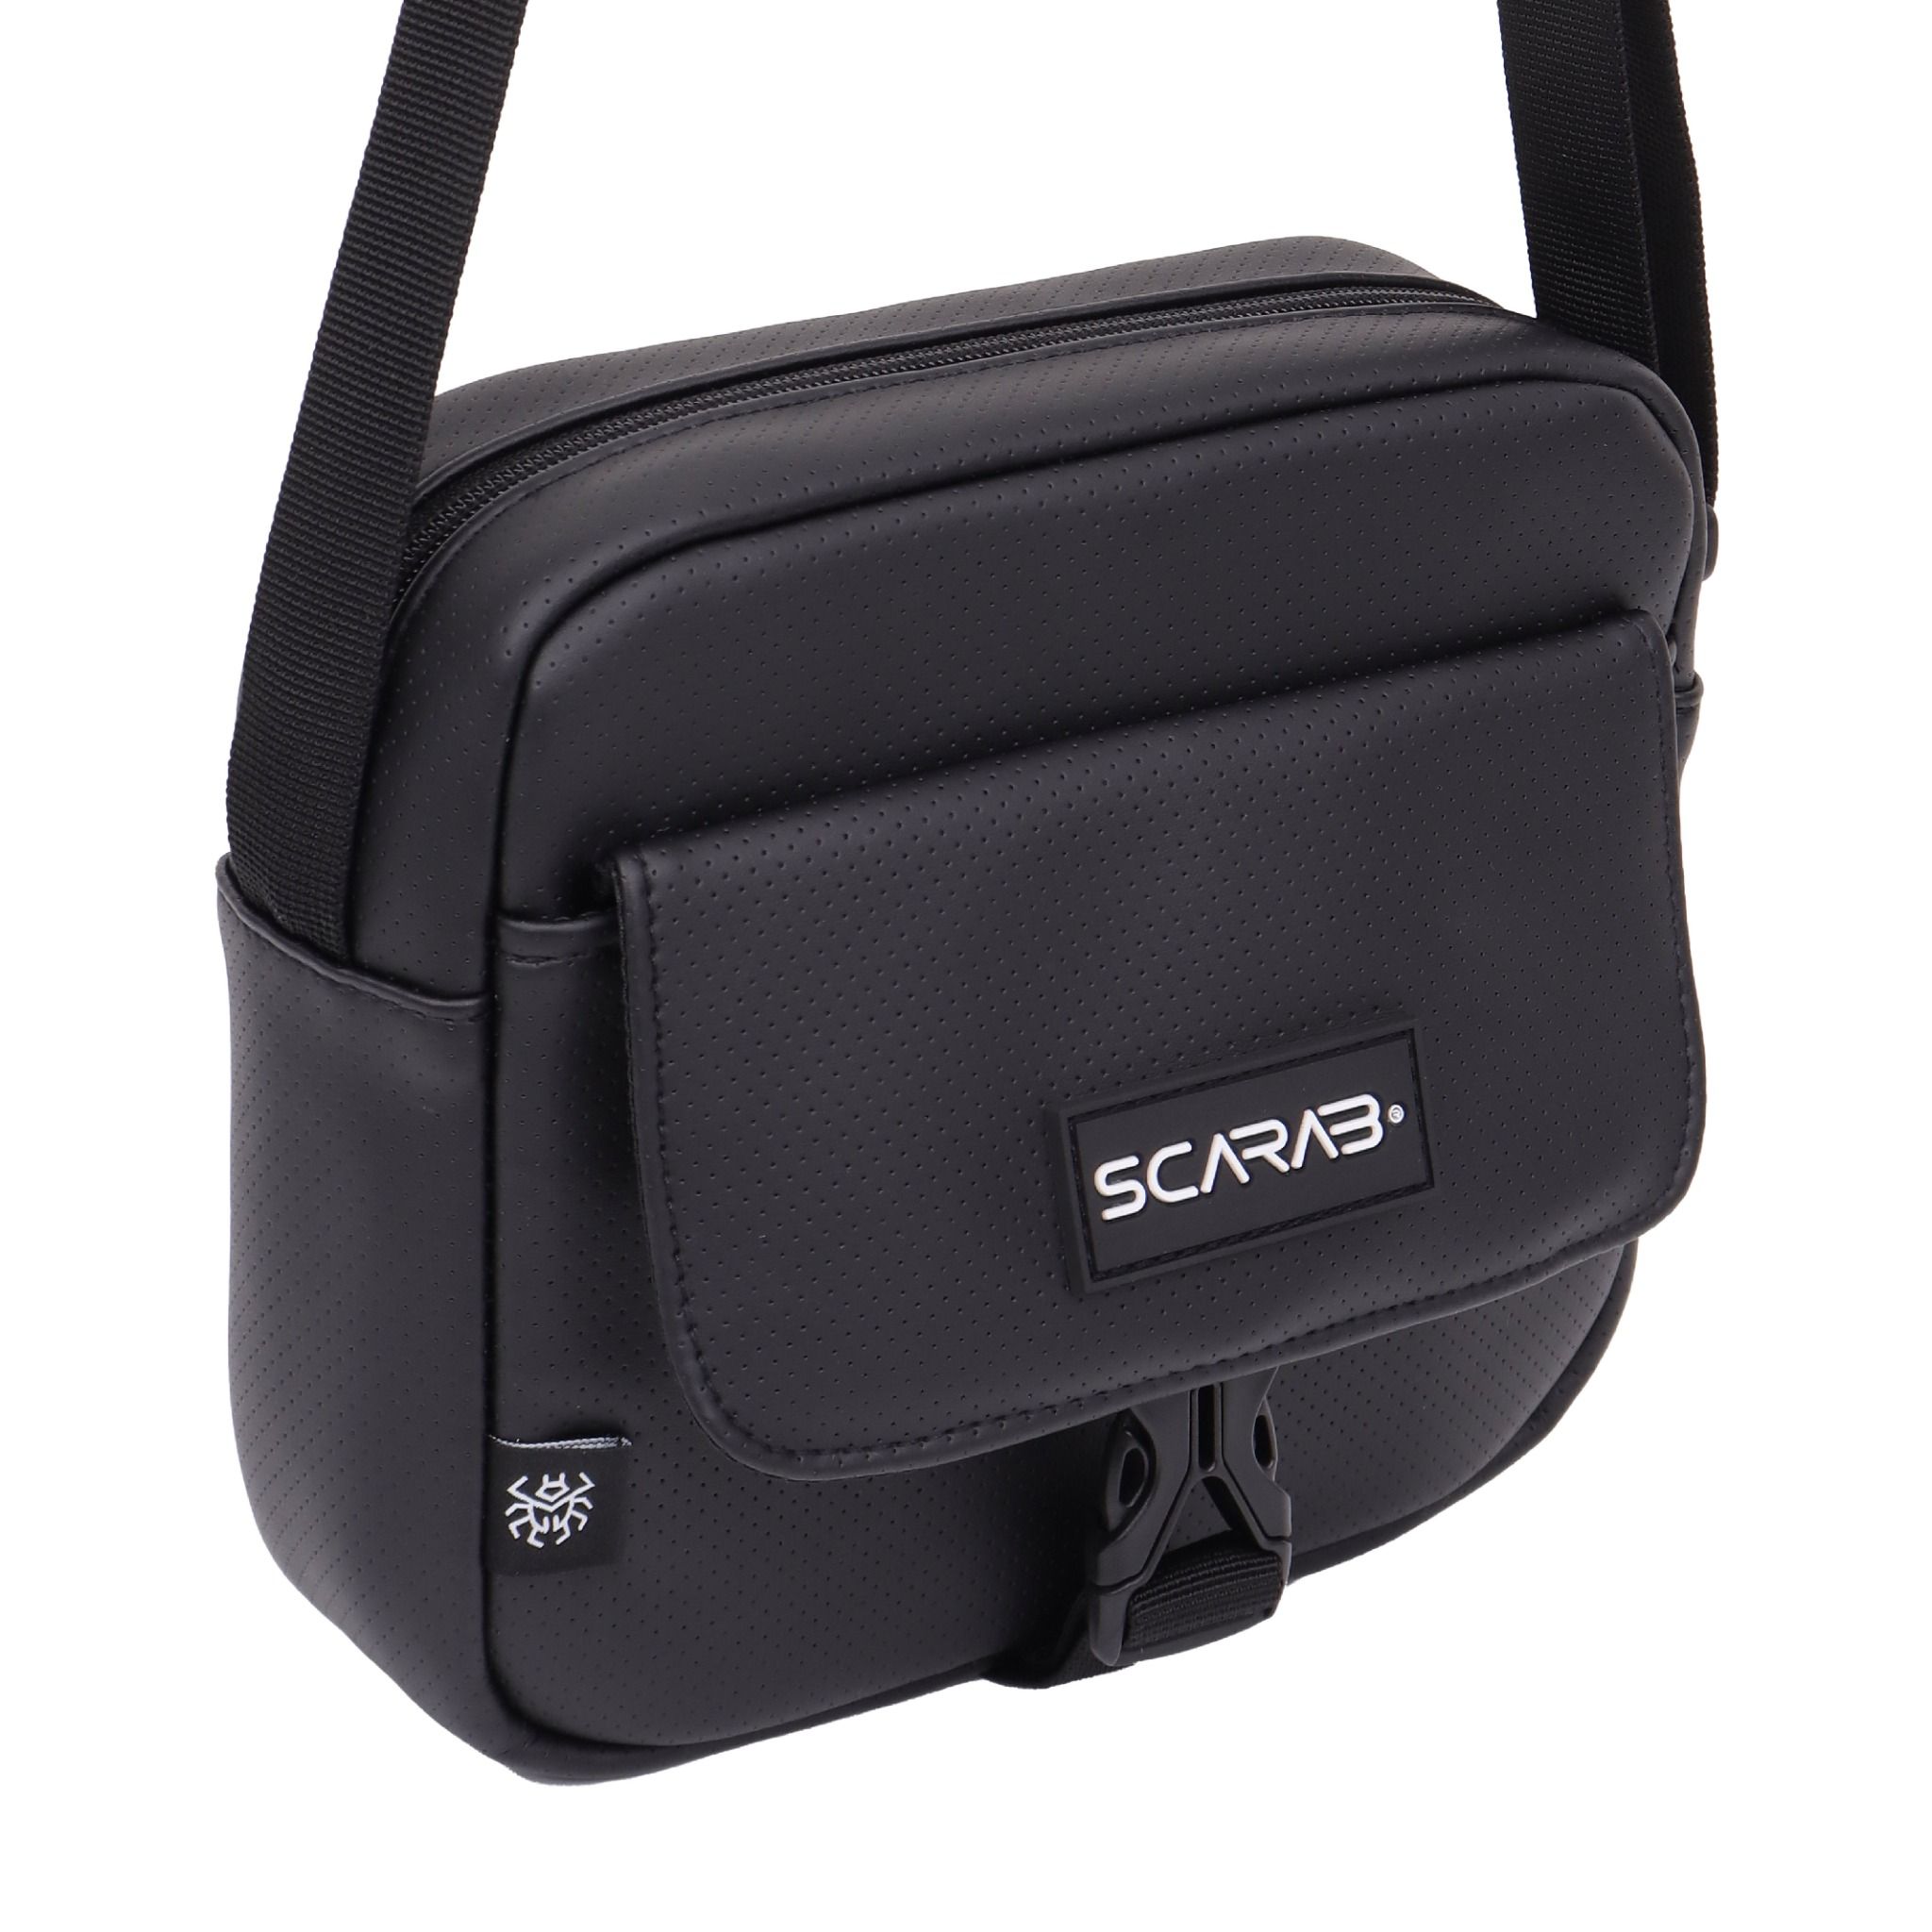  Scarab Urban Leather Shoulder Bag - Black 